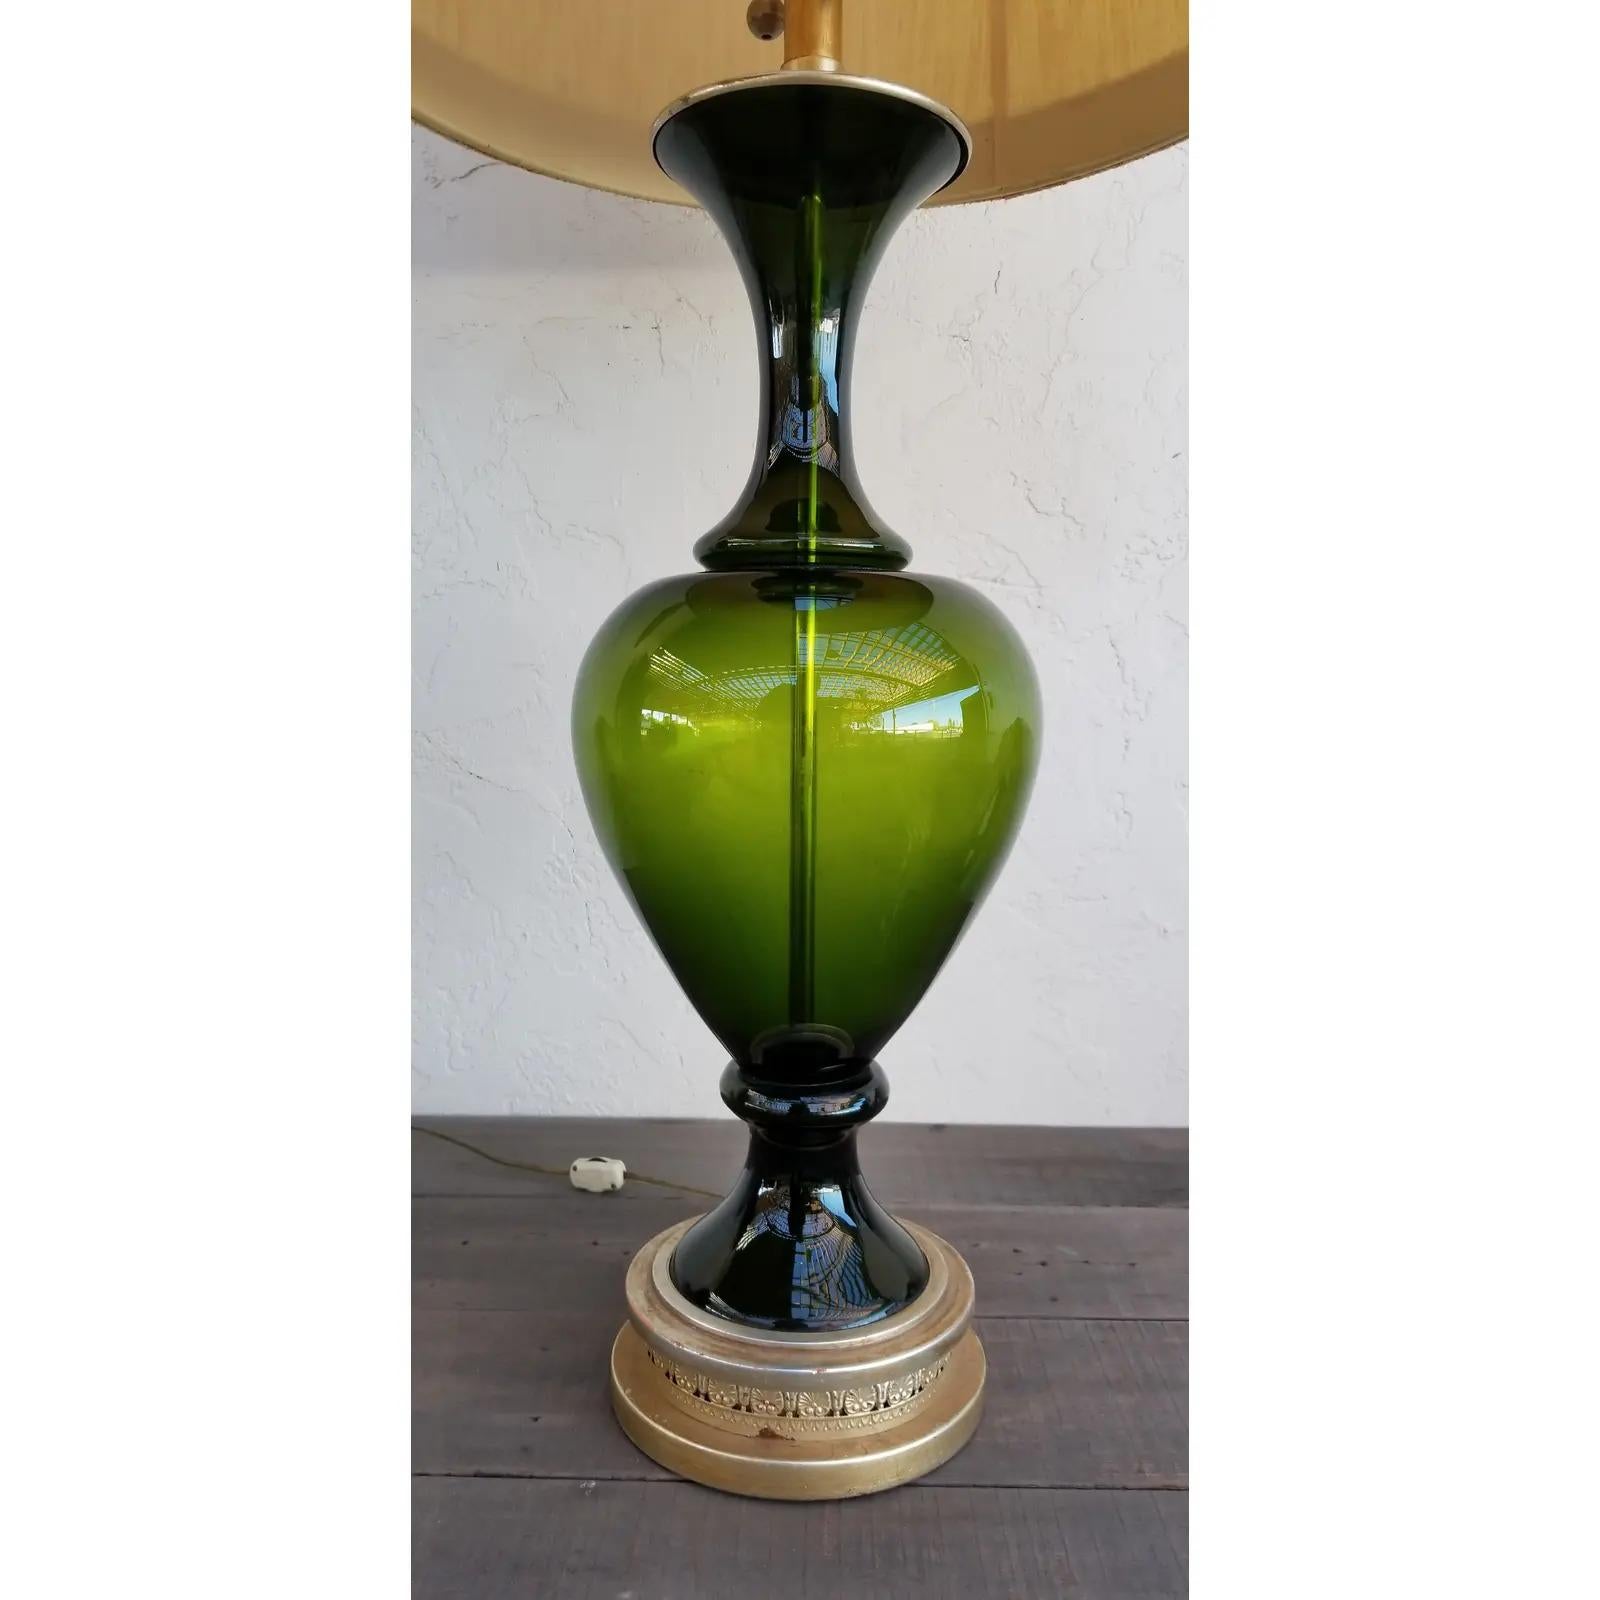 Eine gedrehte Marbro Tischlampe aus grünem Glas, die ihren originalen Lampenschirm mit griechischem Schlüsselmuster behält. Ausgezeichneter Originalzustand. Der Sockel hat einen Durchmesser von 7'.

Marbro Lamp Company
Das Unternehmen wurde von